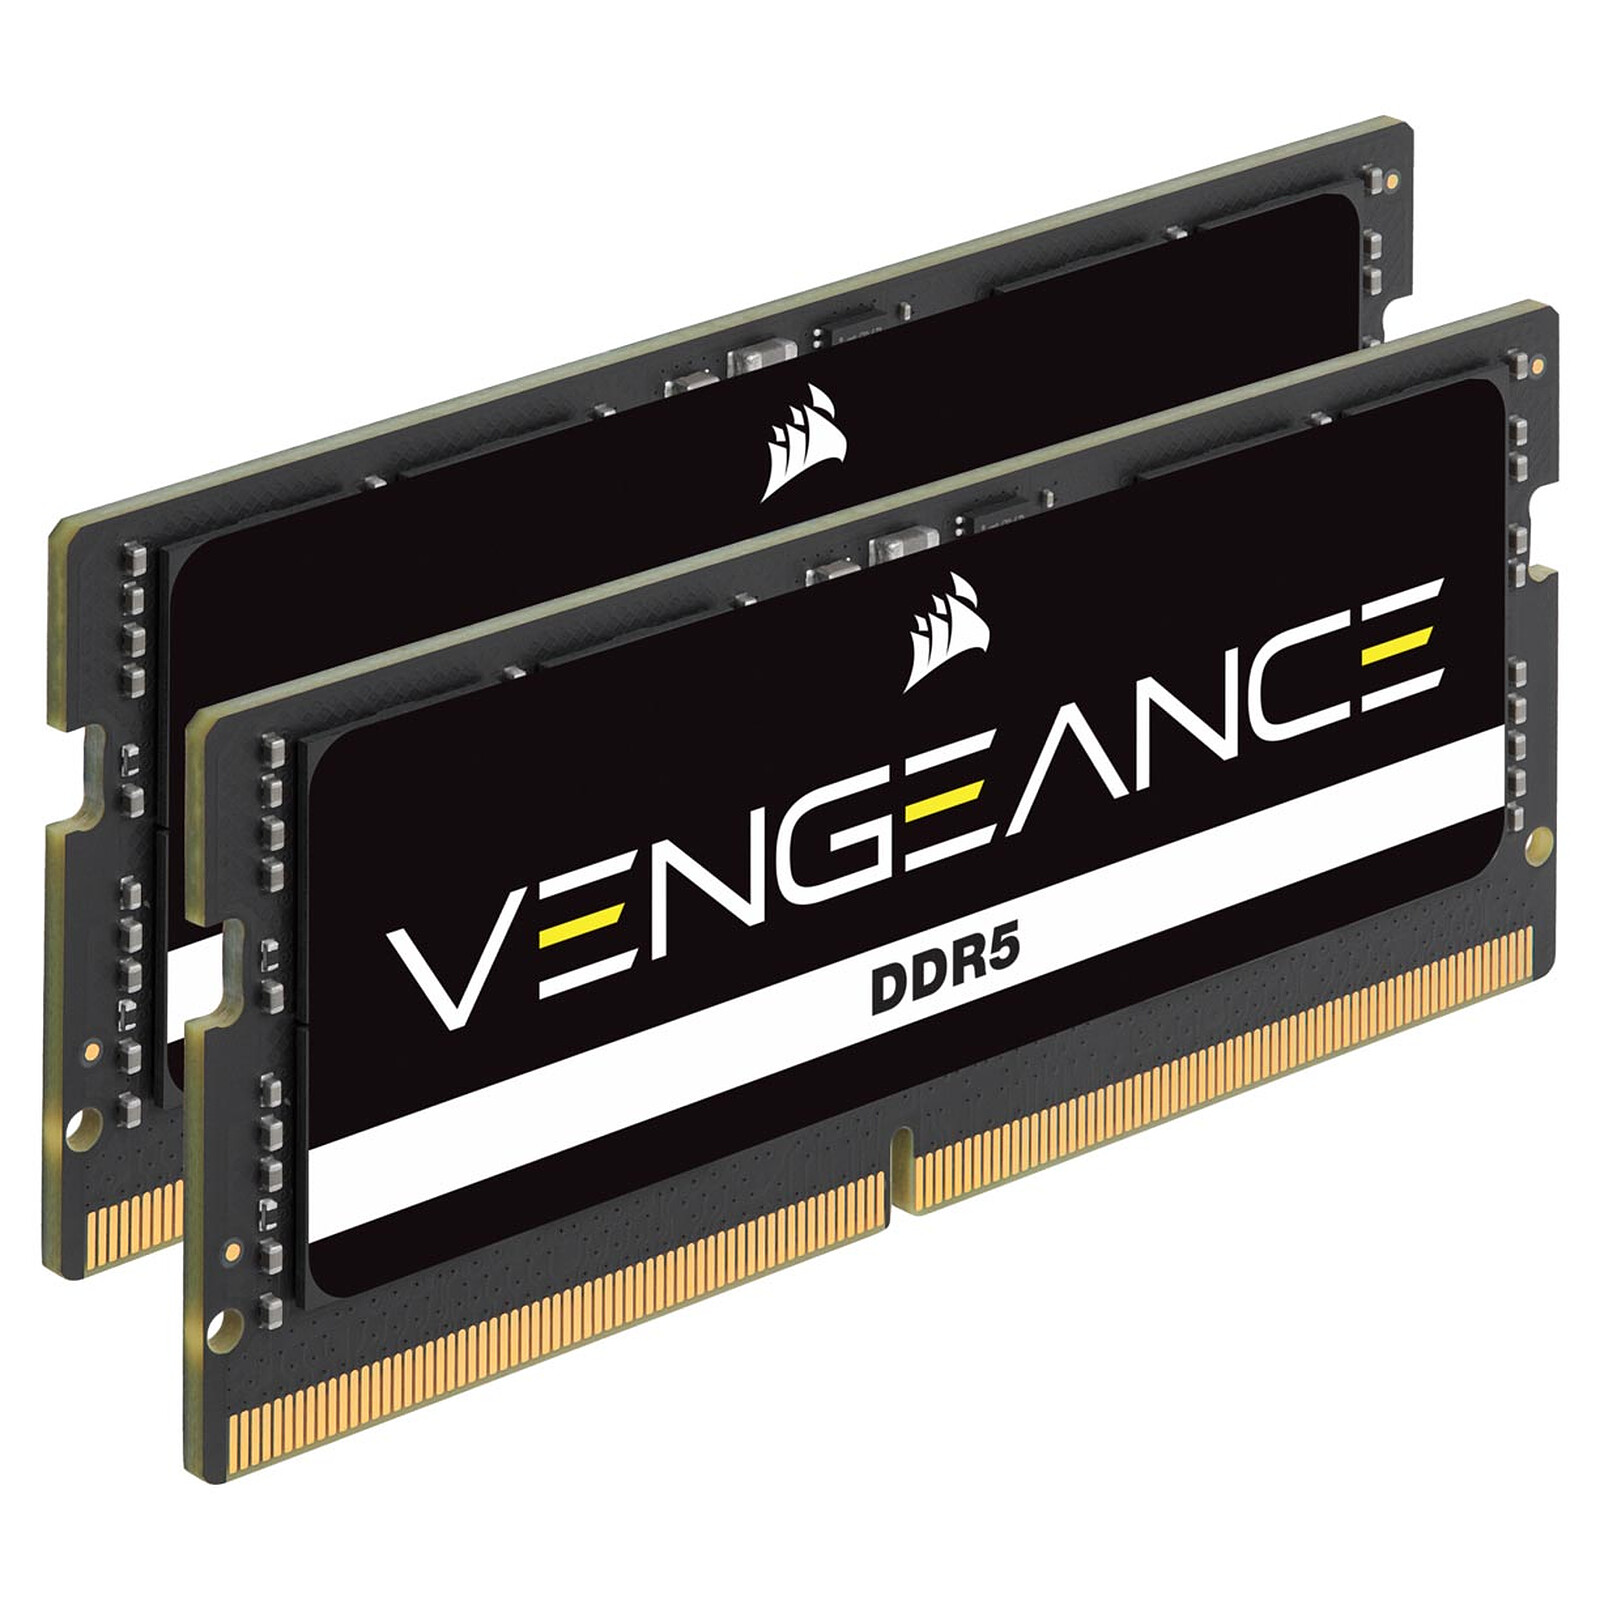 Corsair Vengeance SO-DIMM DDR4 64 Go (2 x 32 Go) 3200 MHz CL22 - Mémoire PC  - LDLC